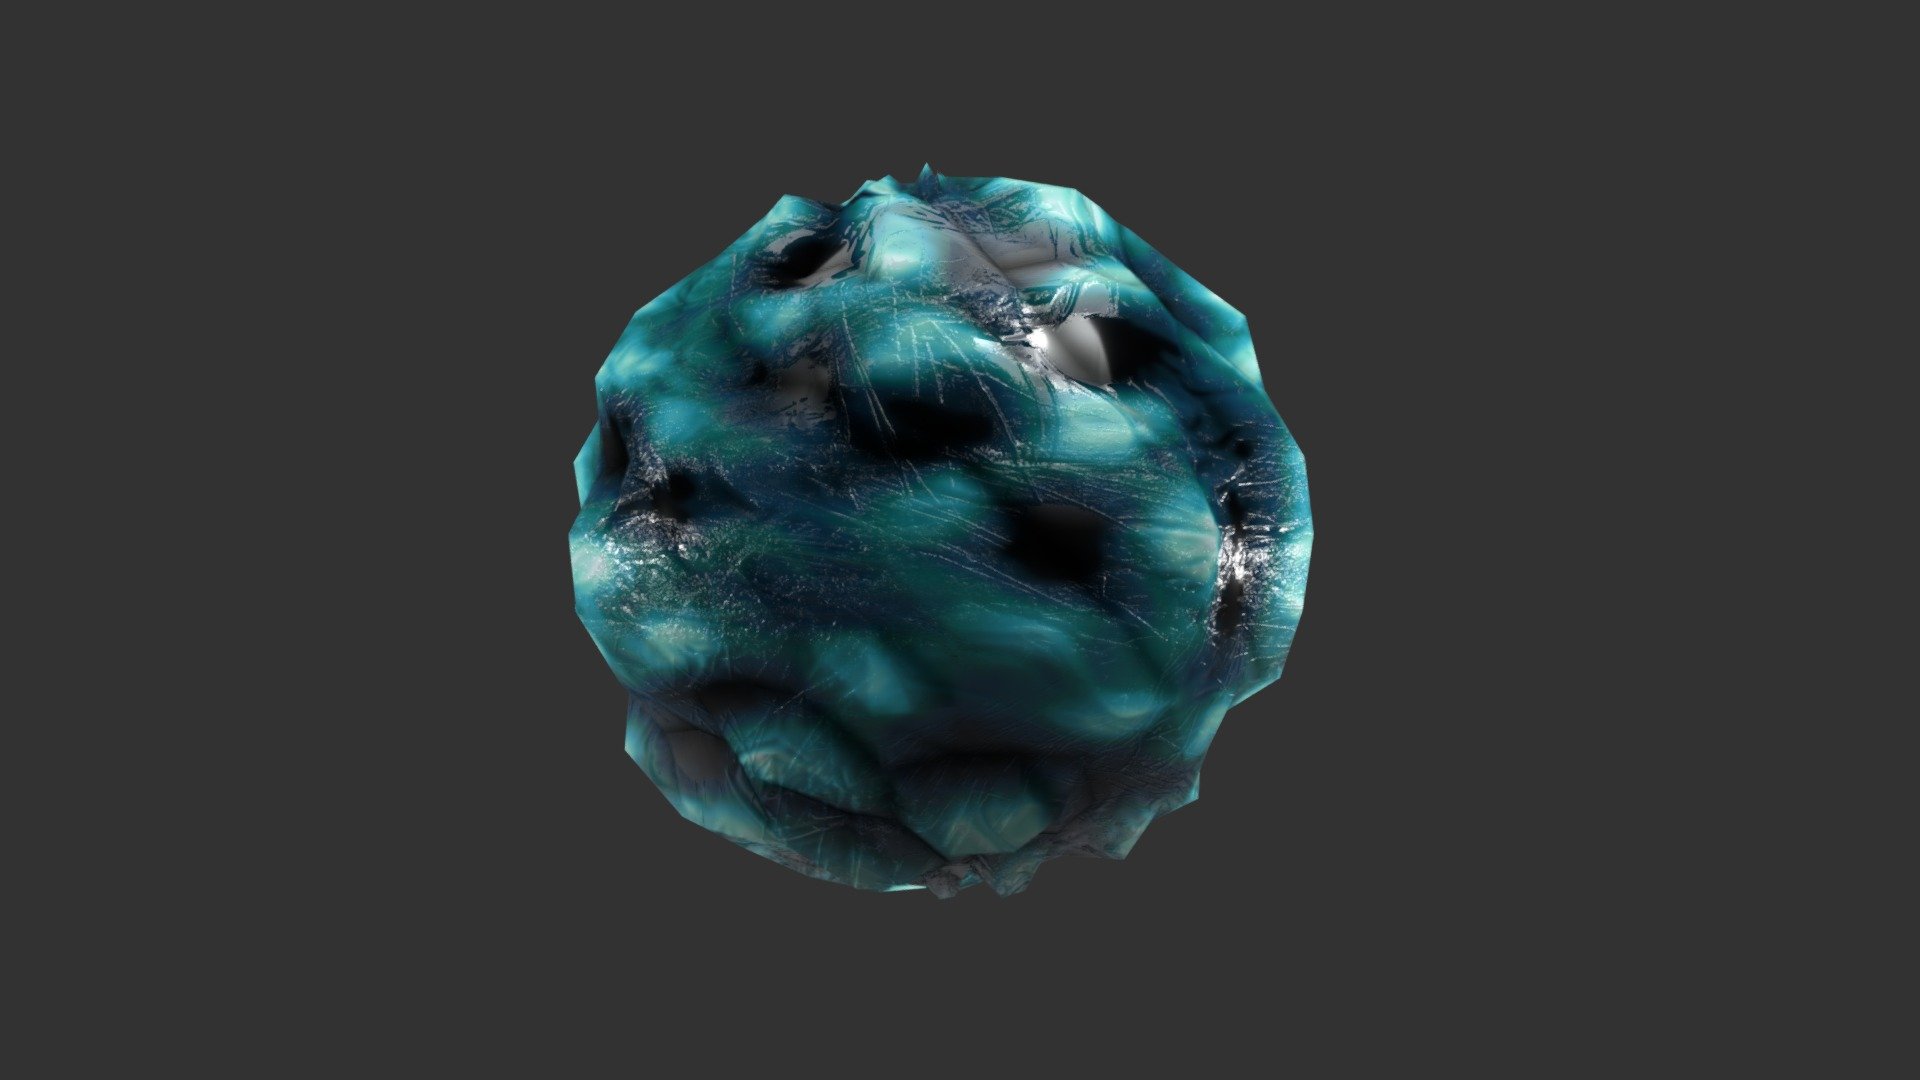 Ice Sphere